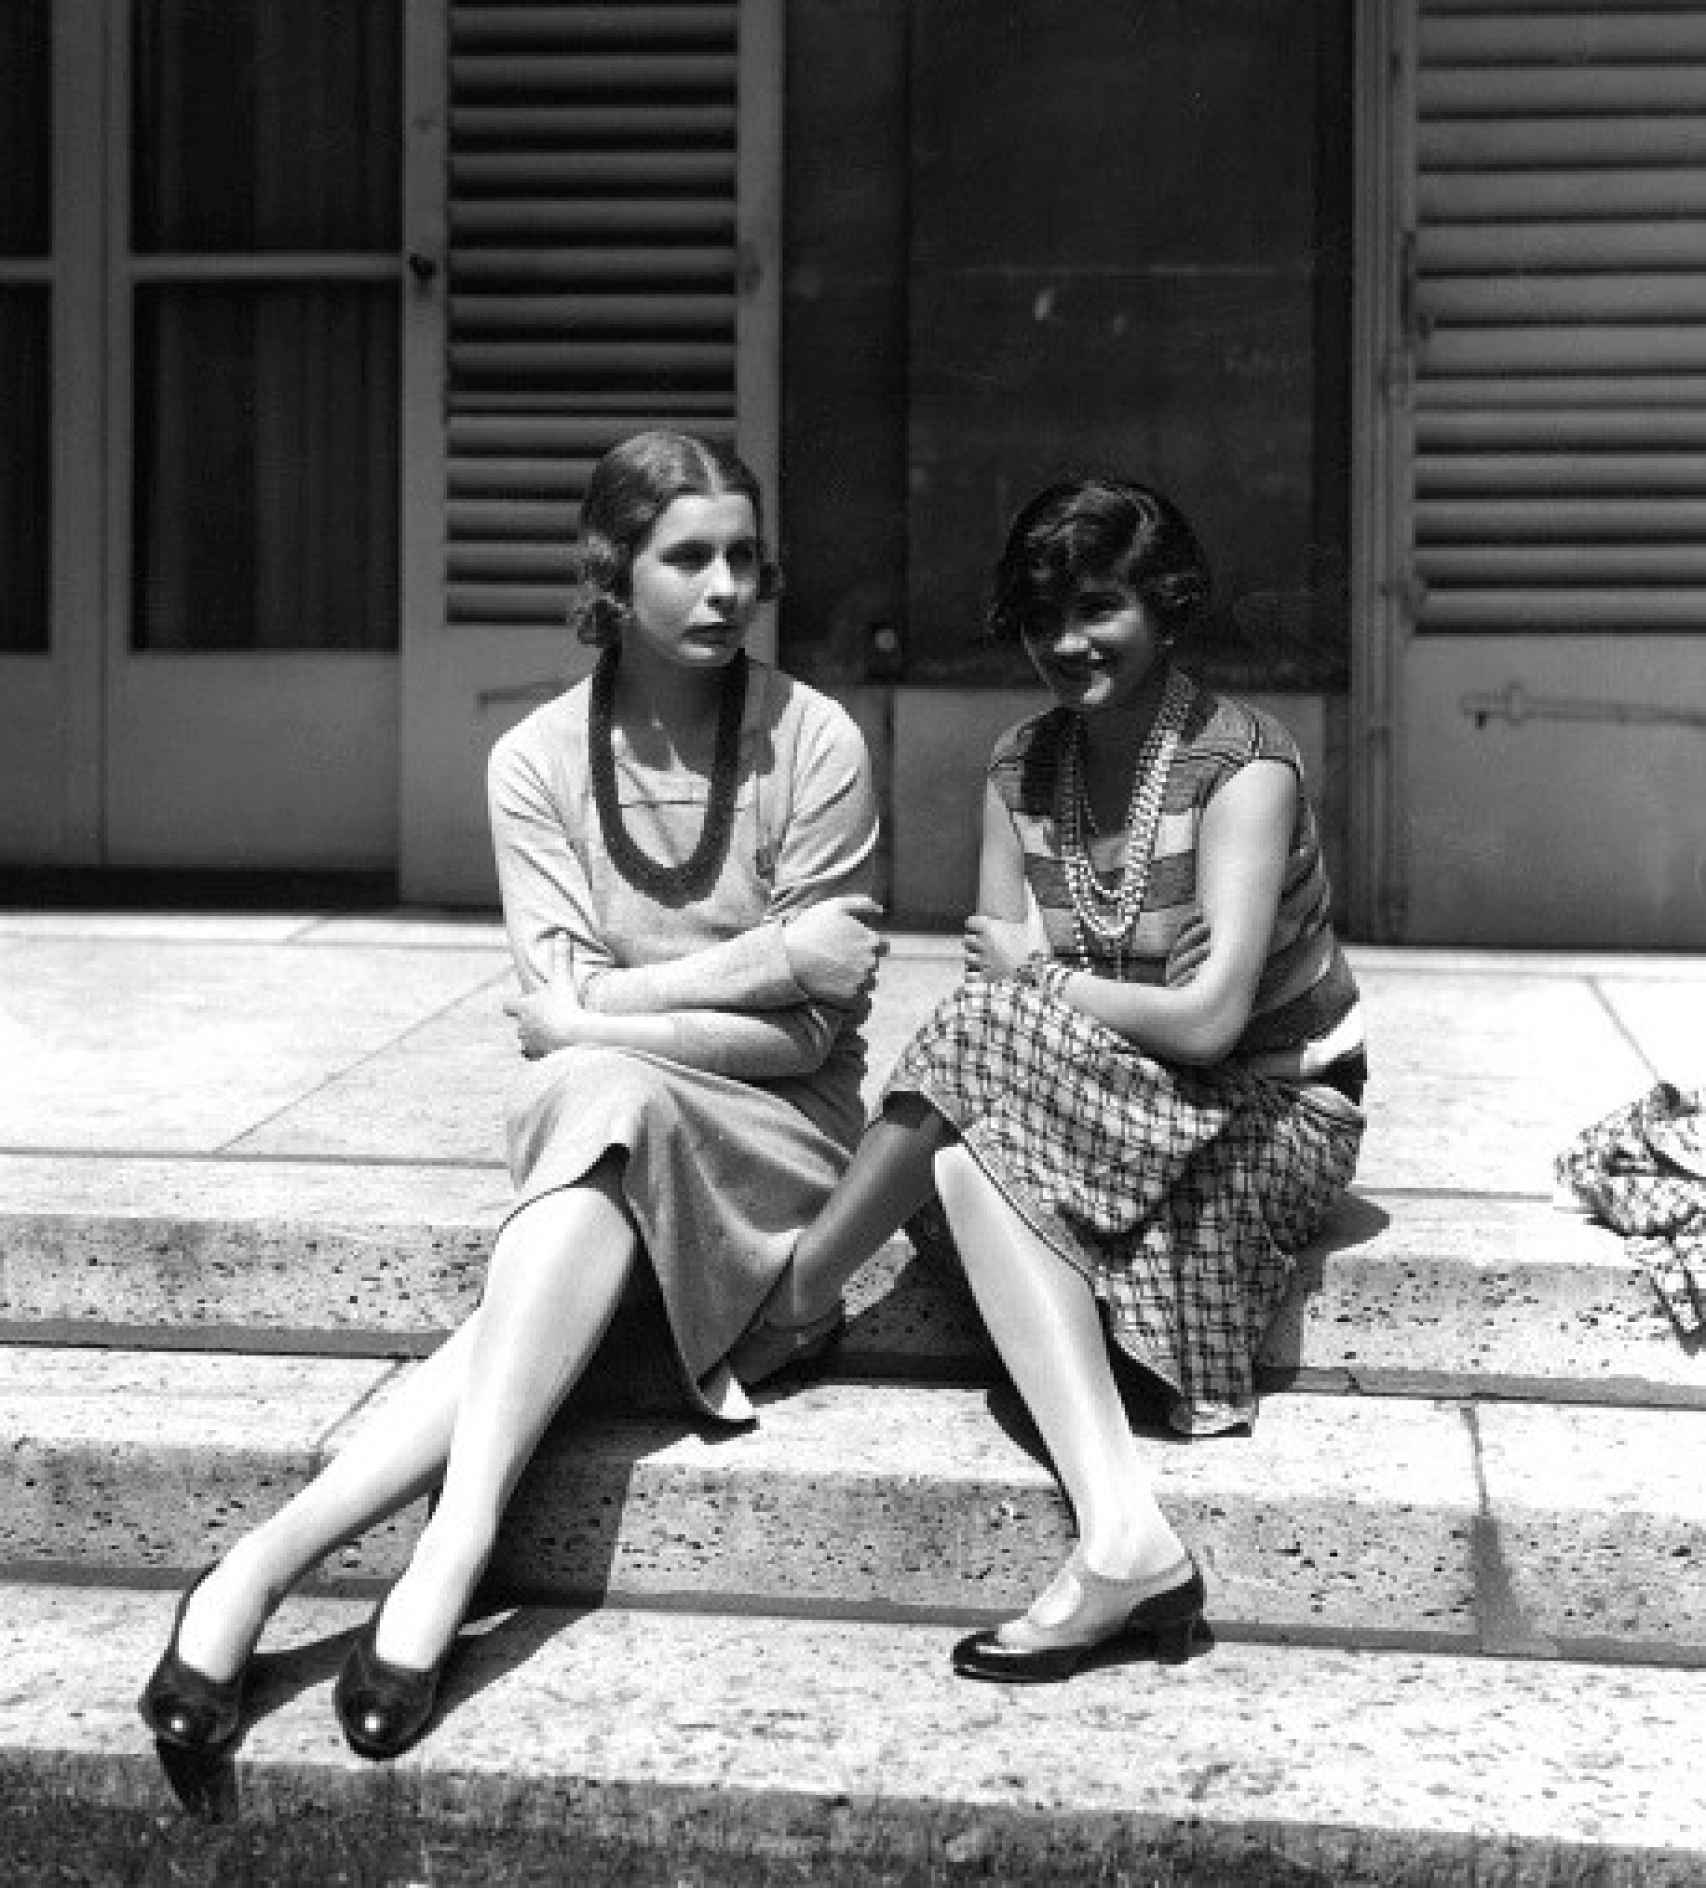 Gabrielle ‘Coco’ Chanel conversa relajadamente con Lady Iya Abdy en las escaleras de una casa de verano, y la diseñadora luce zapatos mary jane.